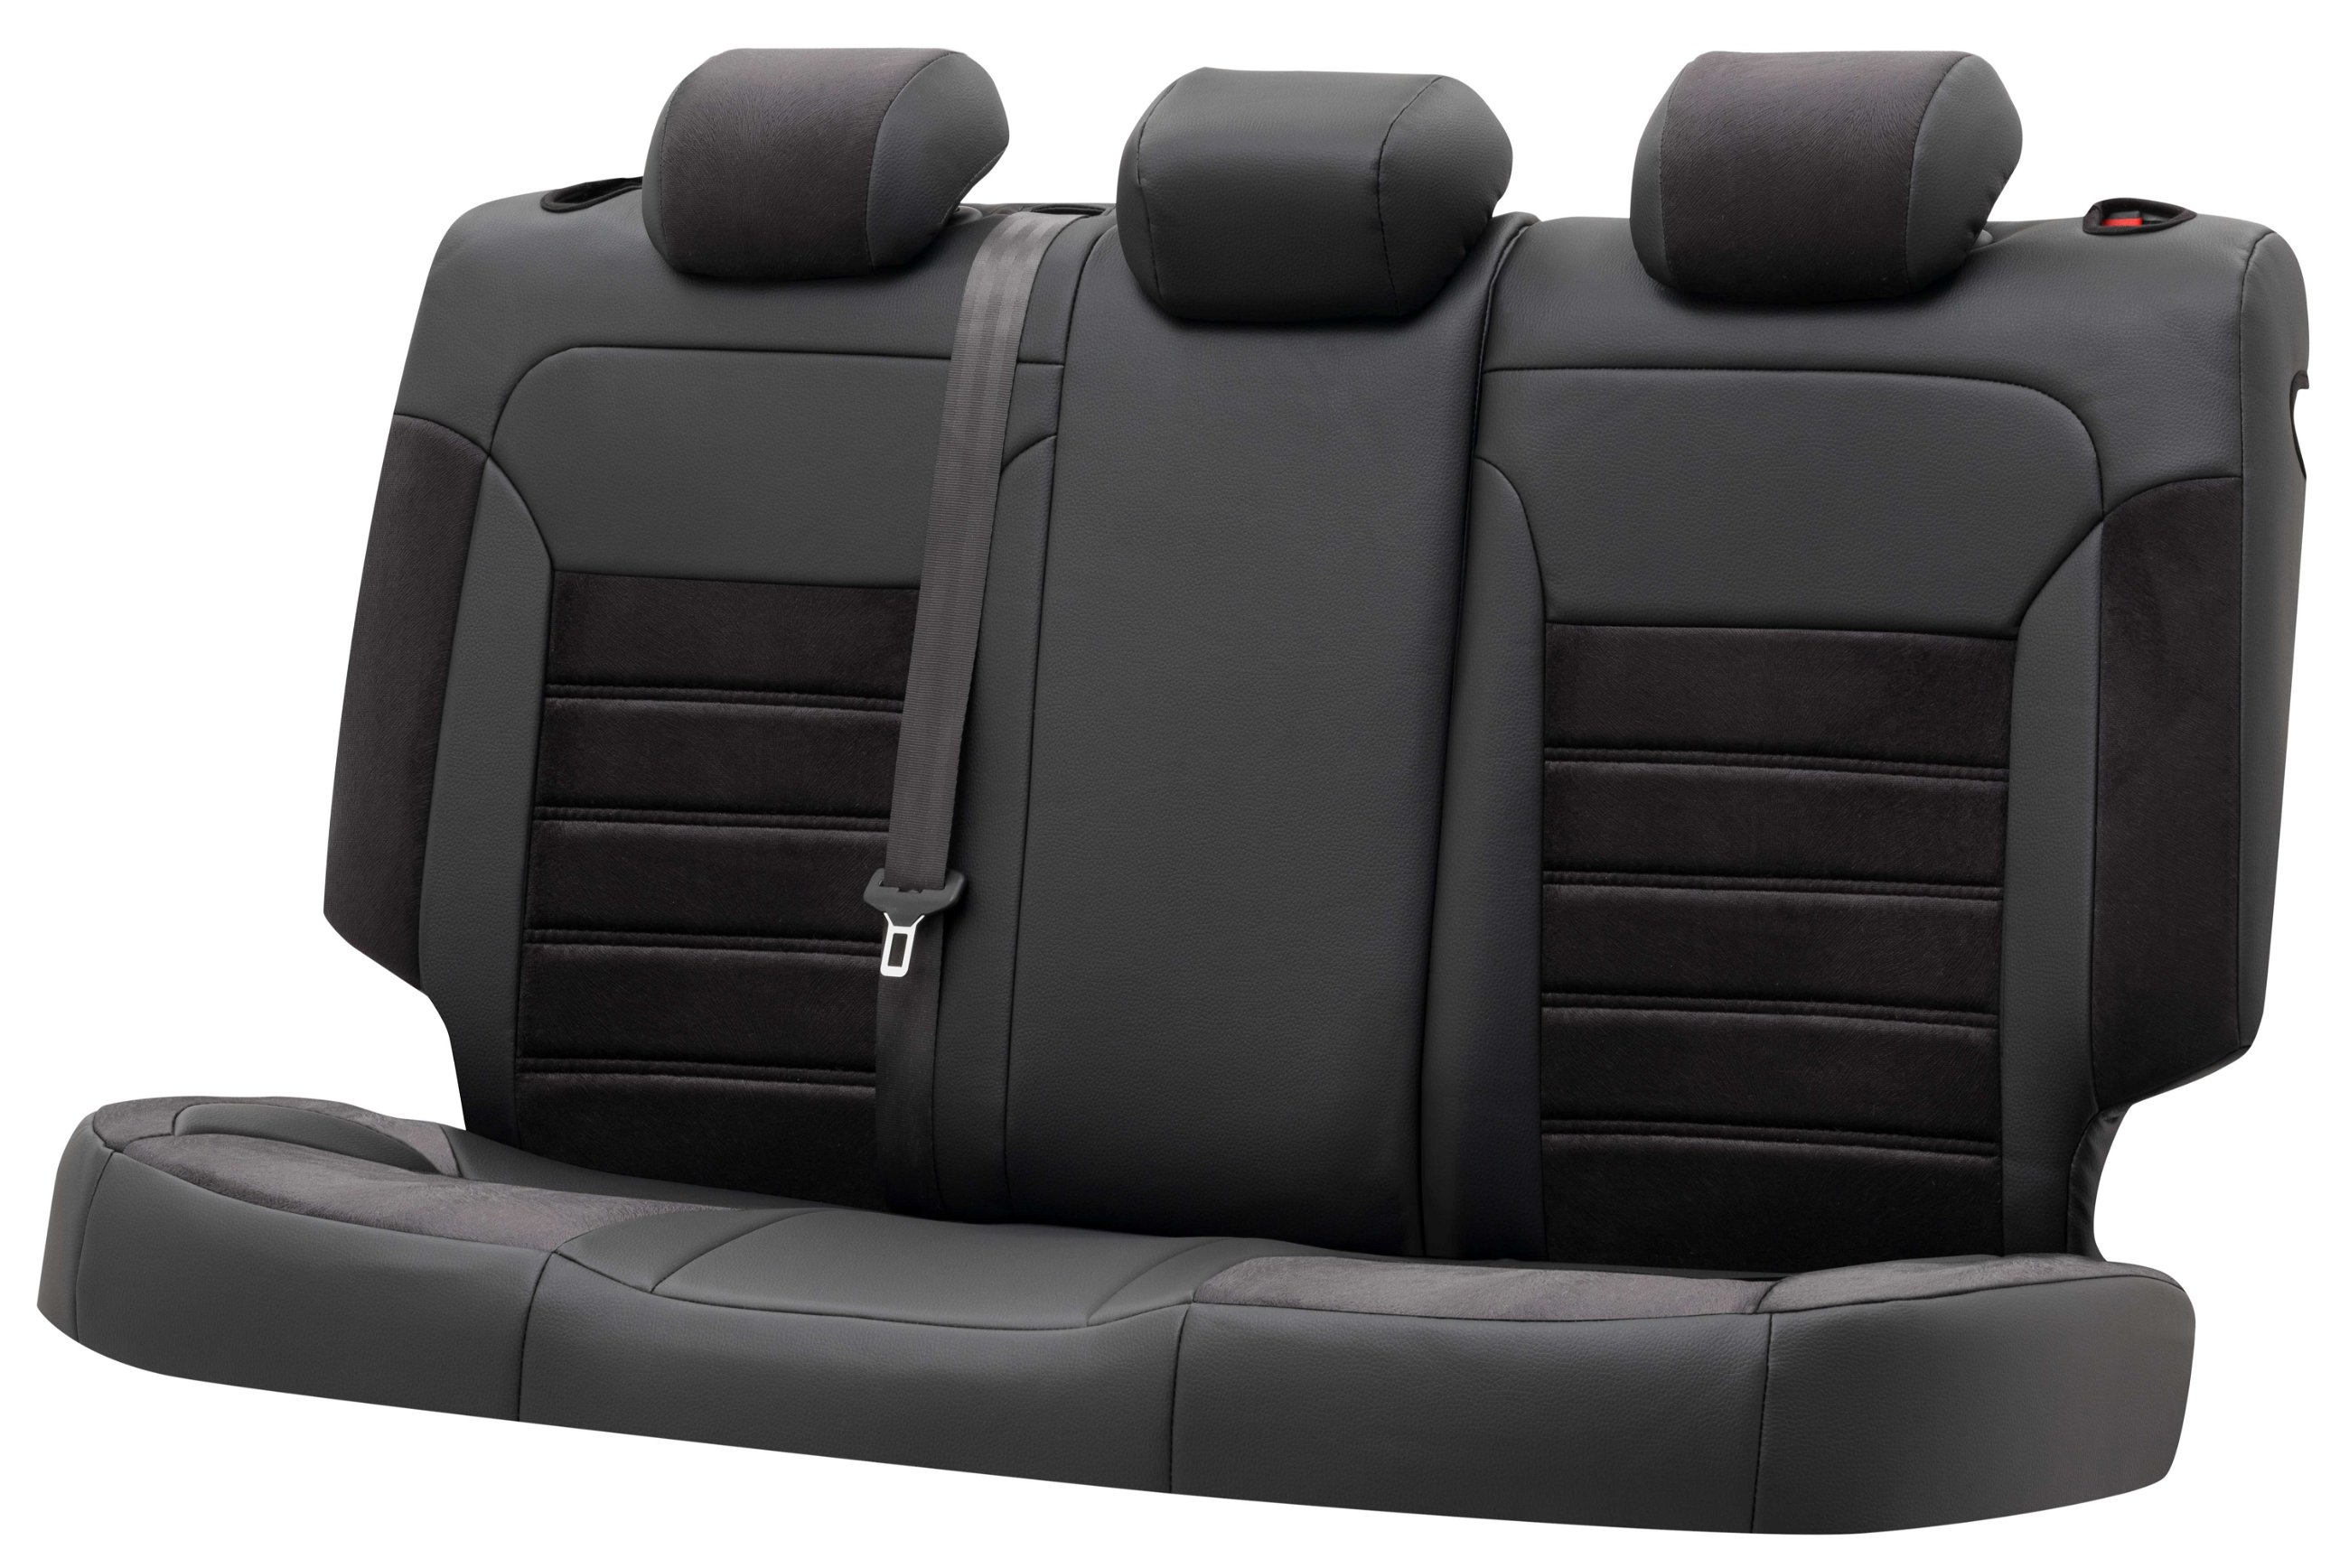 Housse de siège Bari pour Audi Q5 11/2008 à 12/2017, 1 housse de siège arrière pour les sièges normaux